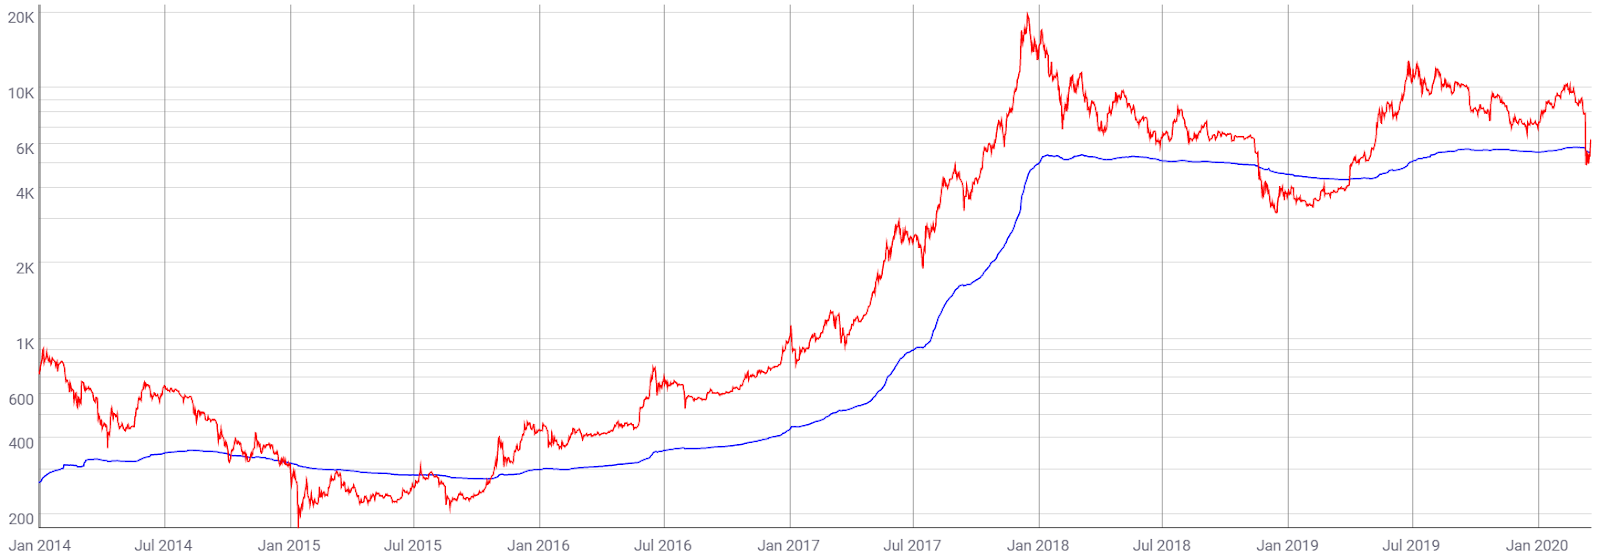 BTC Price (Red), Realized Price (Blue). Source: Coinmetrics